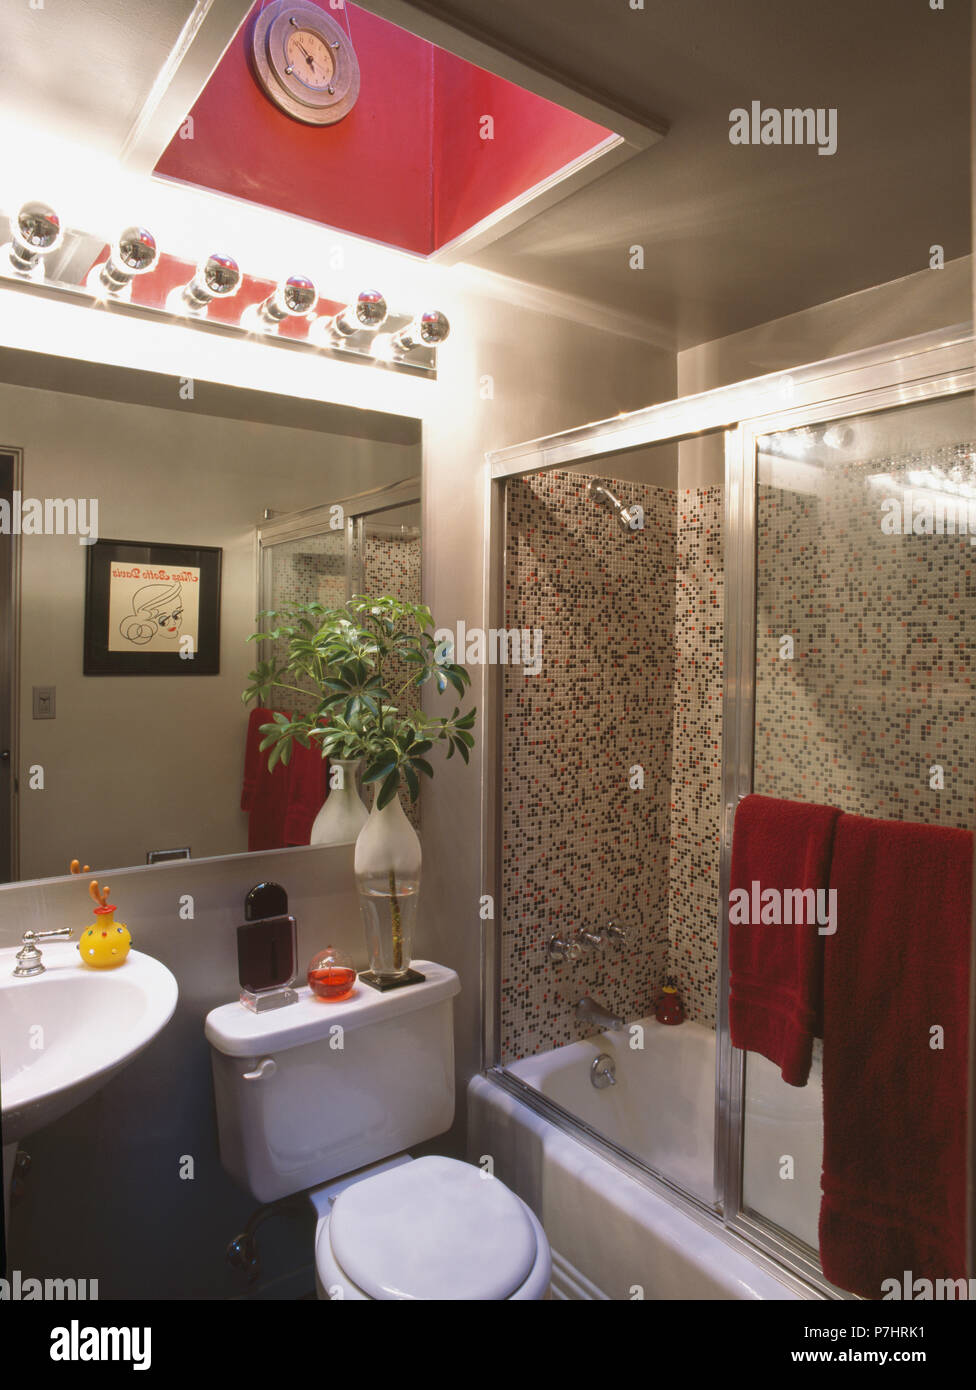 Rosa claraboya encima de espejo en la pared del cuarto de baño pequeño gris  con mampara de cristal en el baño Fotografía de stock - Alamy